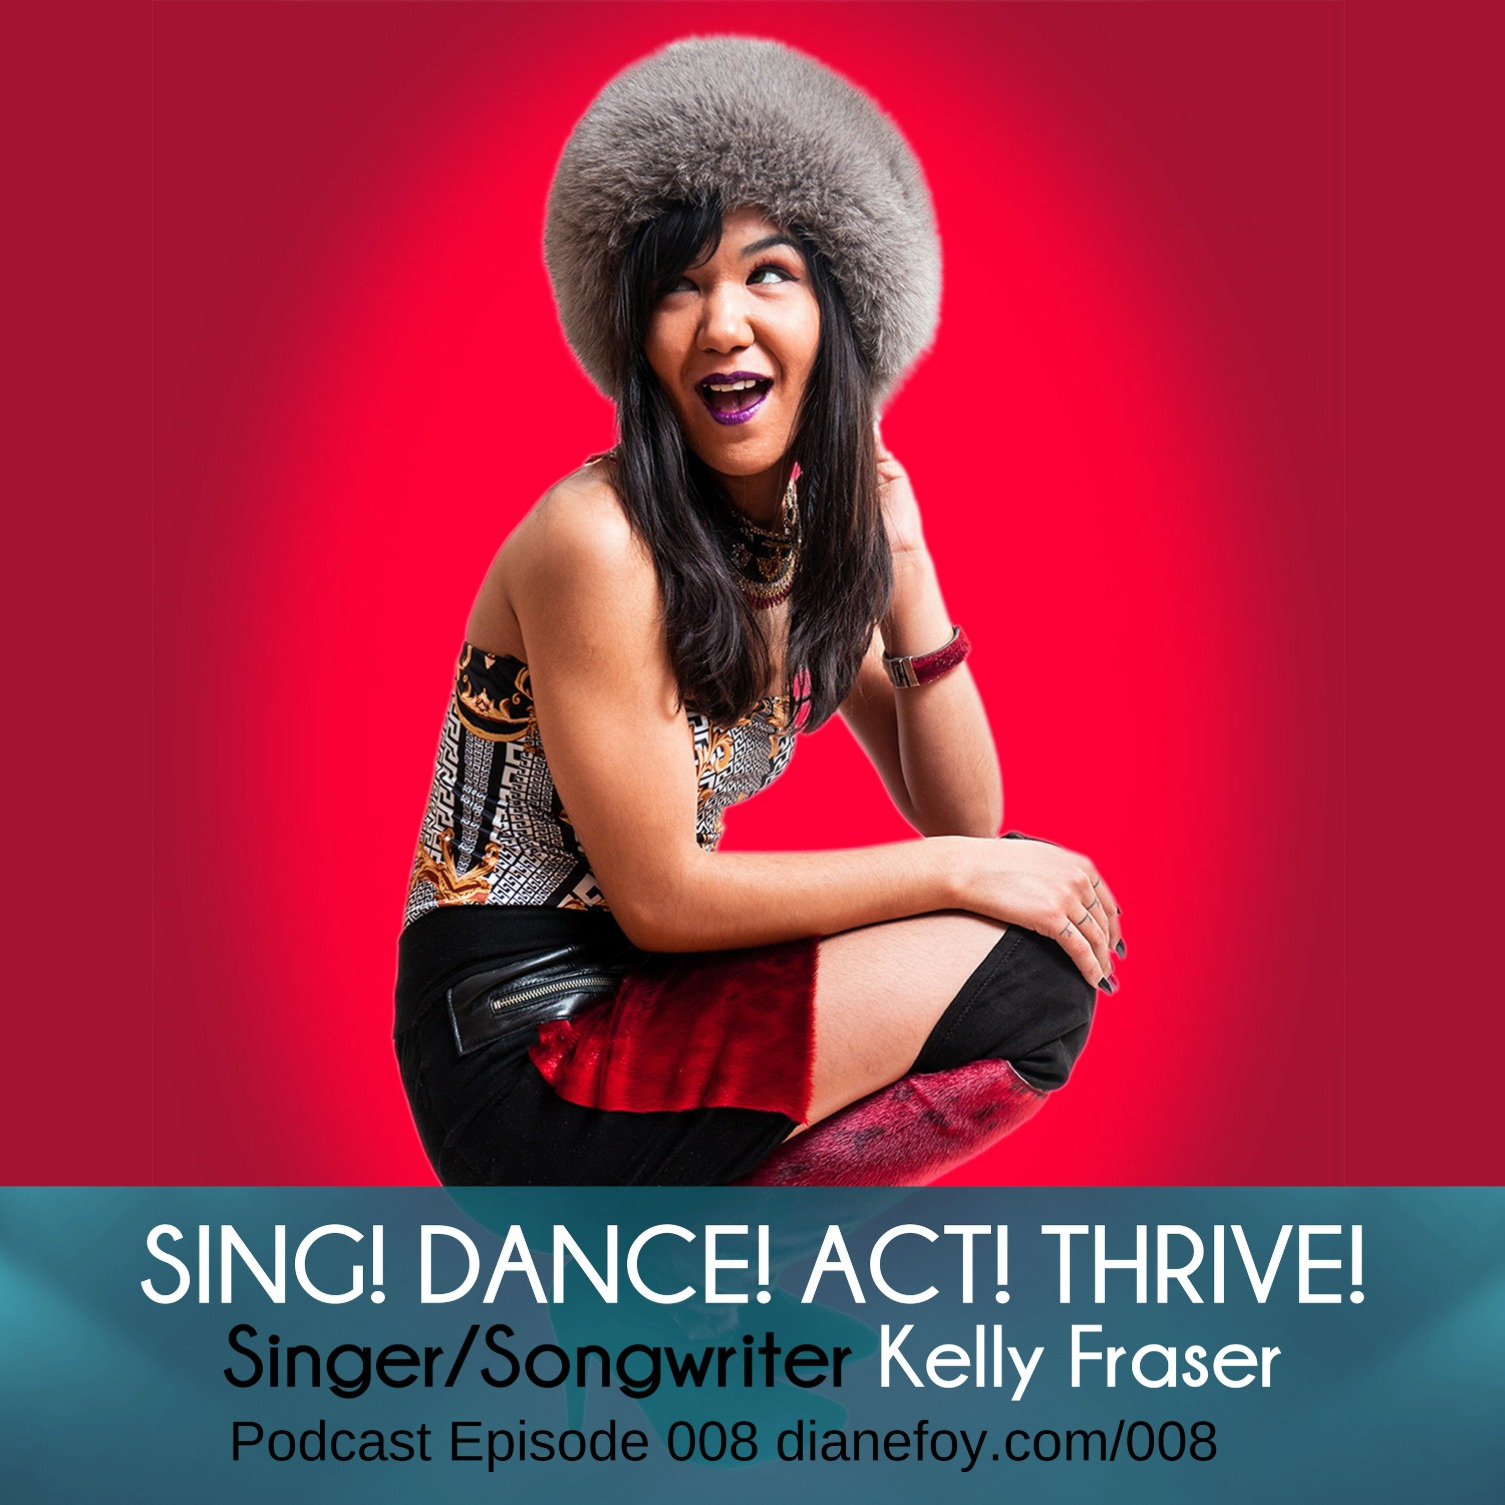 Kelly Fraser, Juno Nominated Canadian Inuk Singer